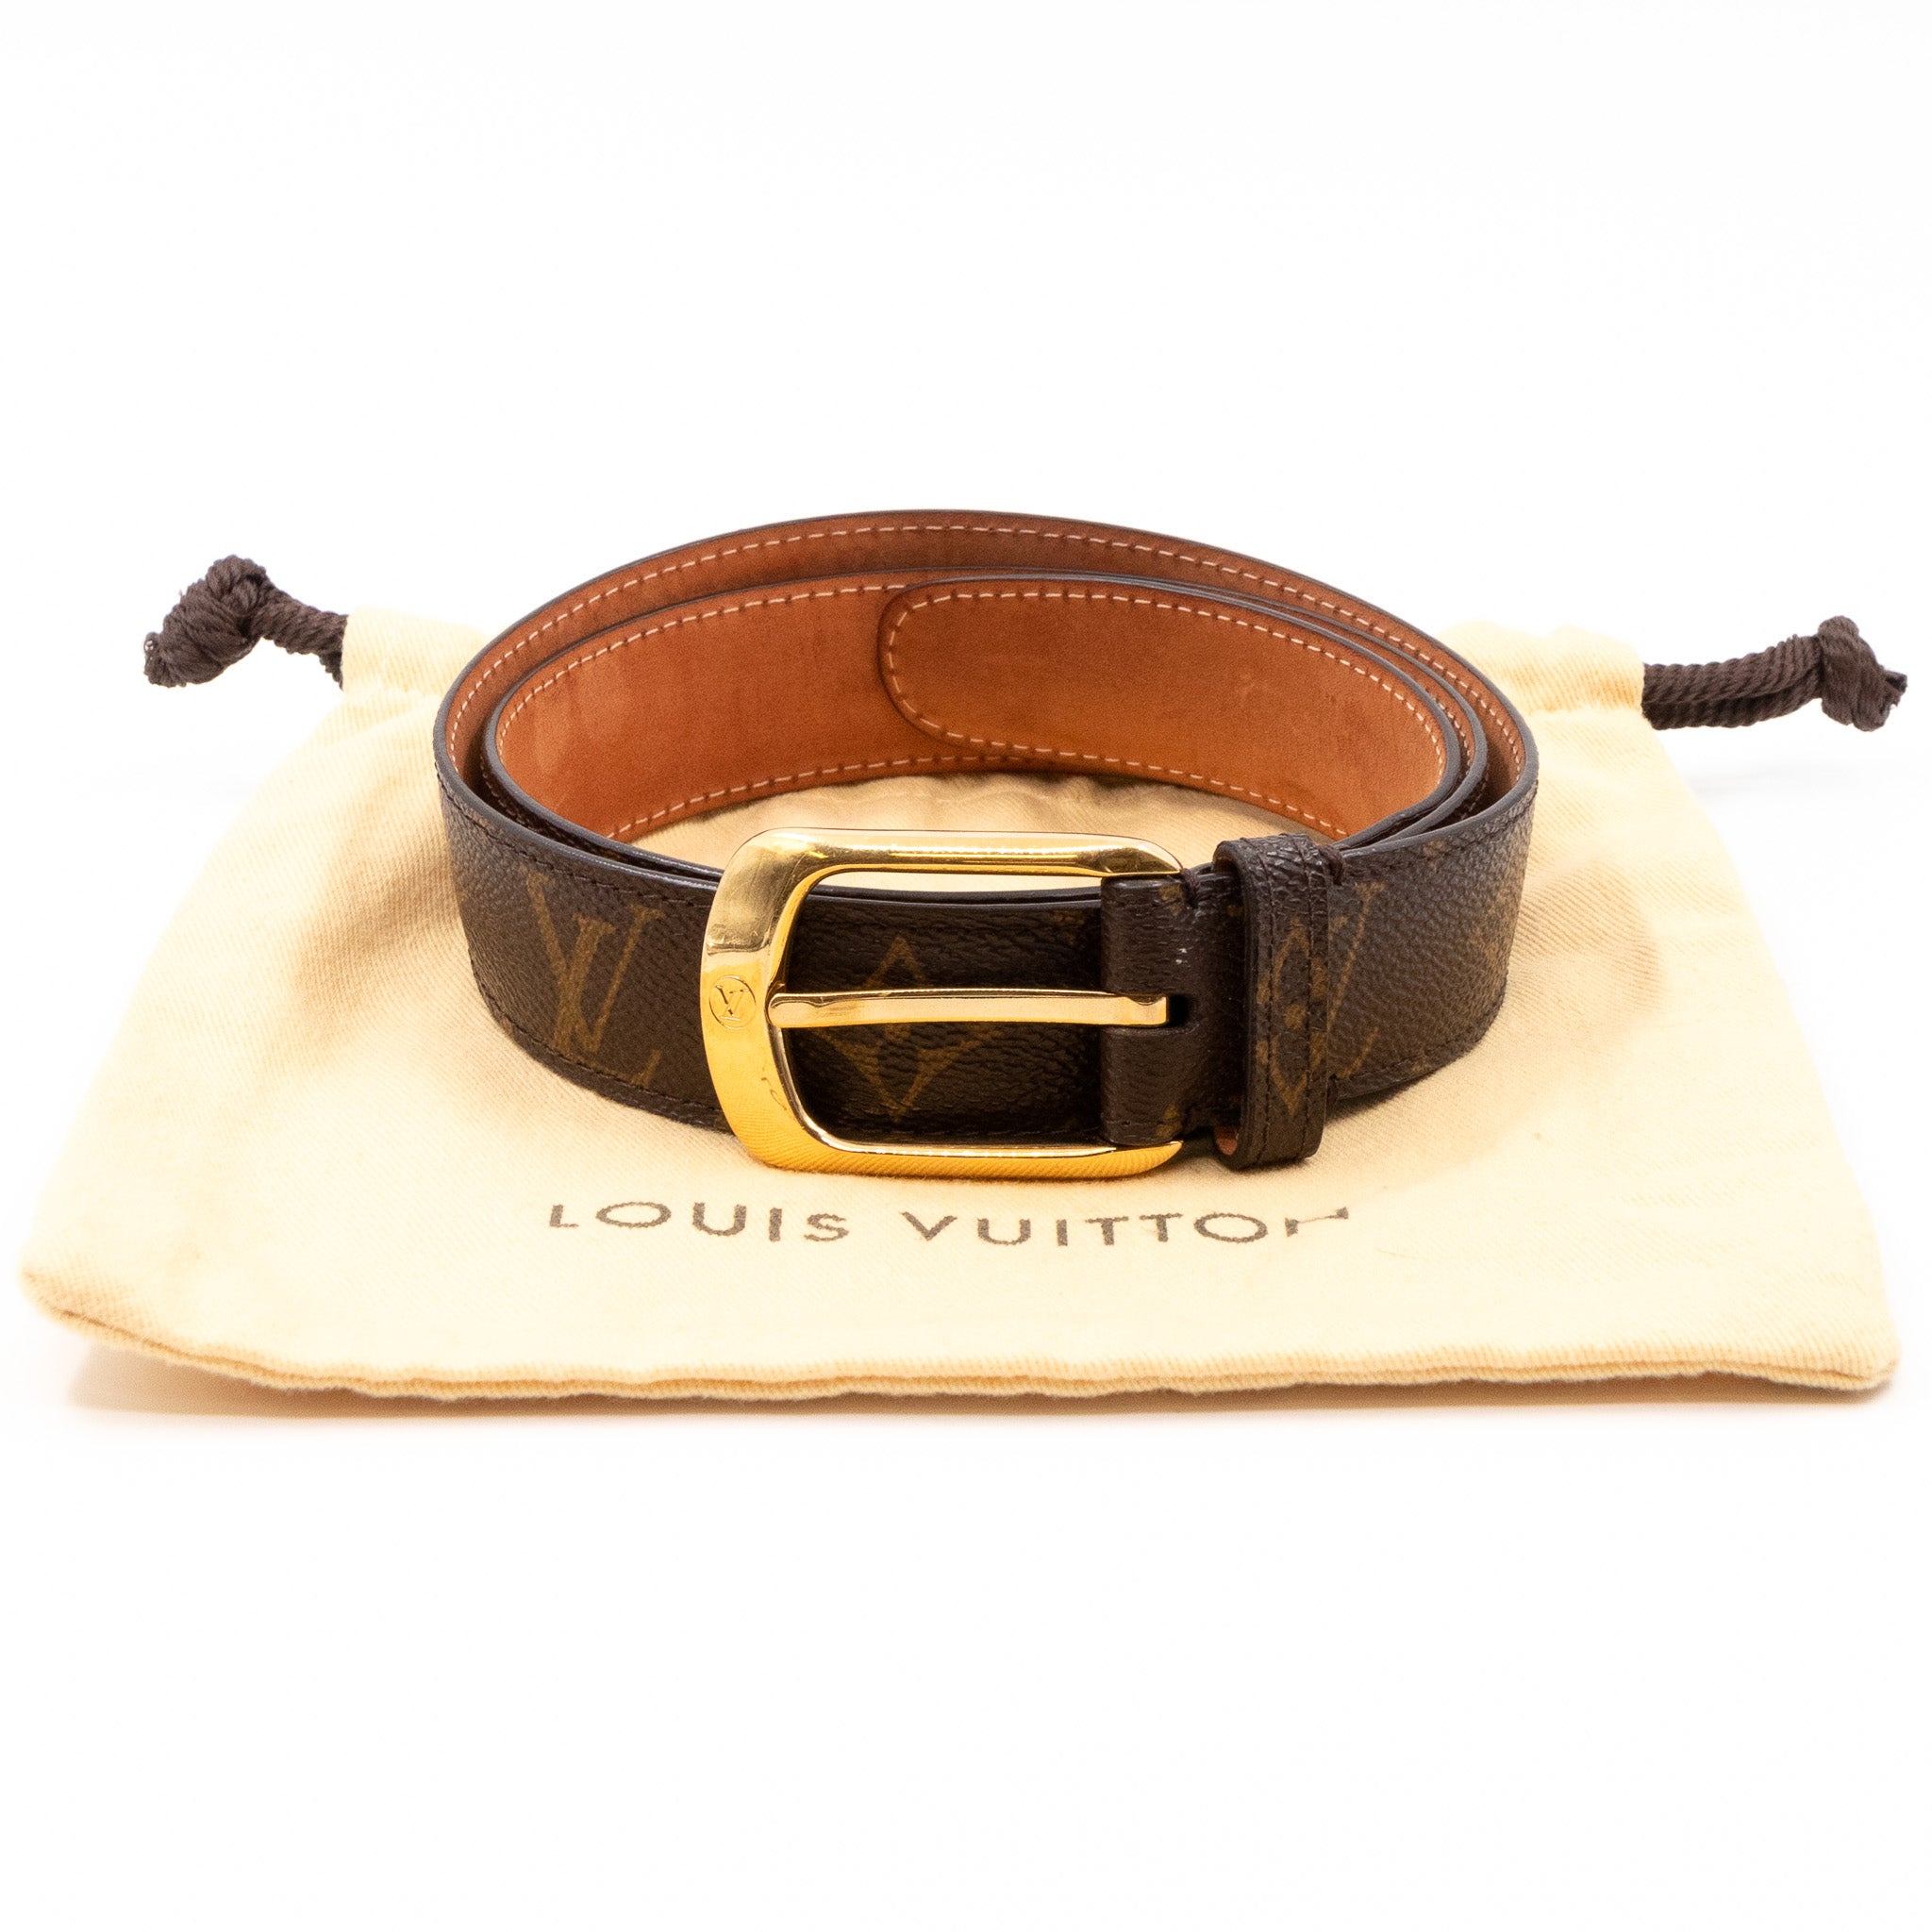 Louis Vuitton – Louis Vuitton Ellipse Belt Monogram 85 cm – Queen Station